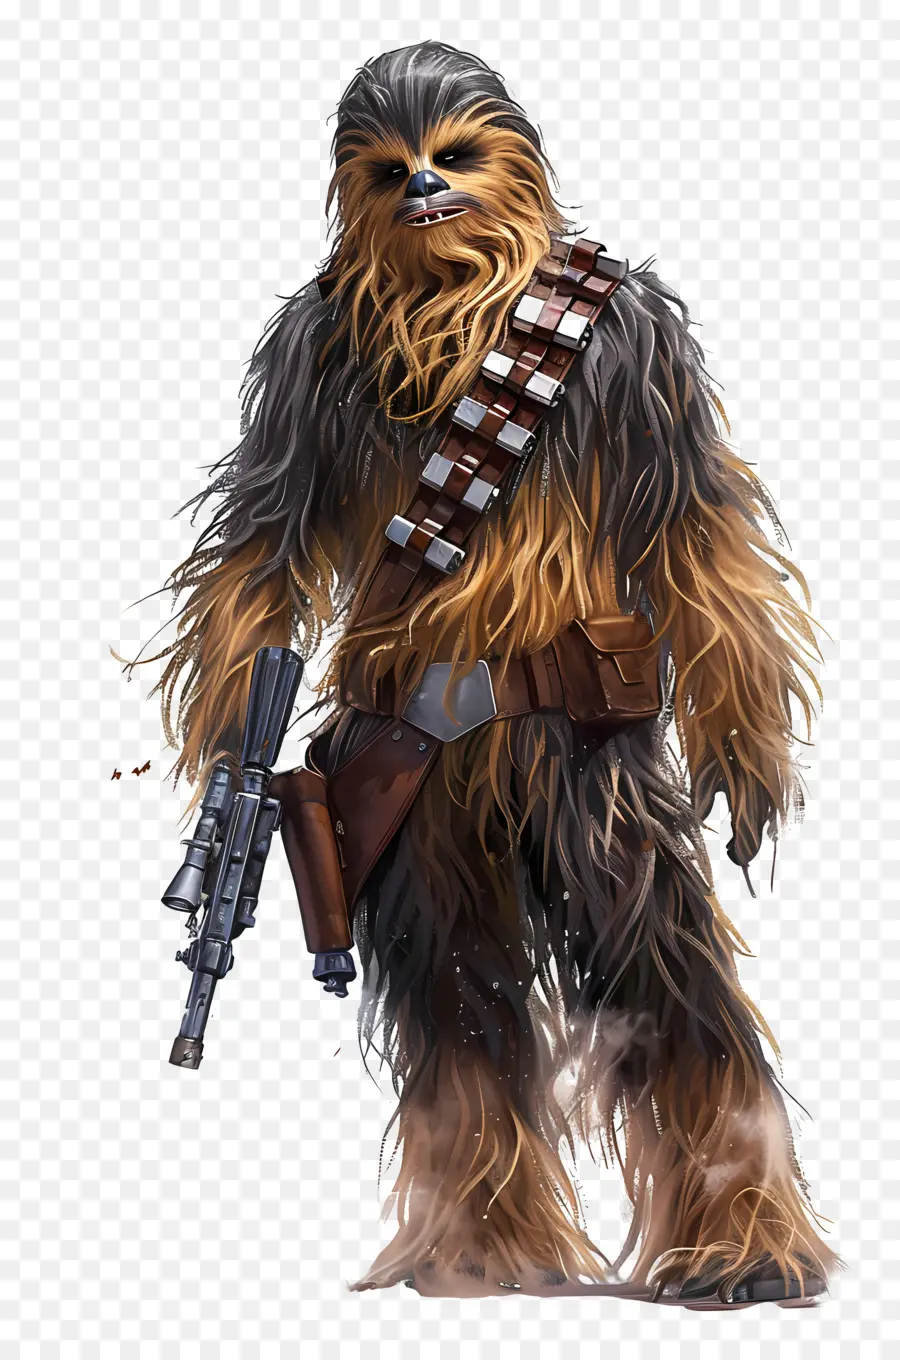 Guerre stellari - Chewbacca che tiene il fucile sul pianeta Tatooine